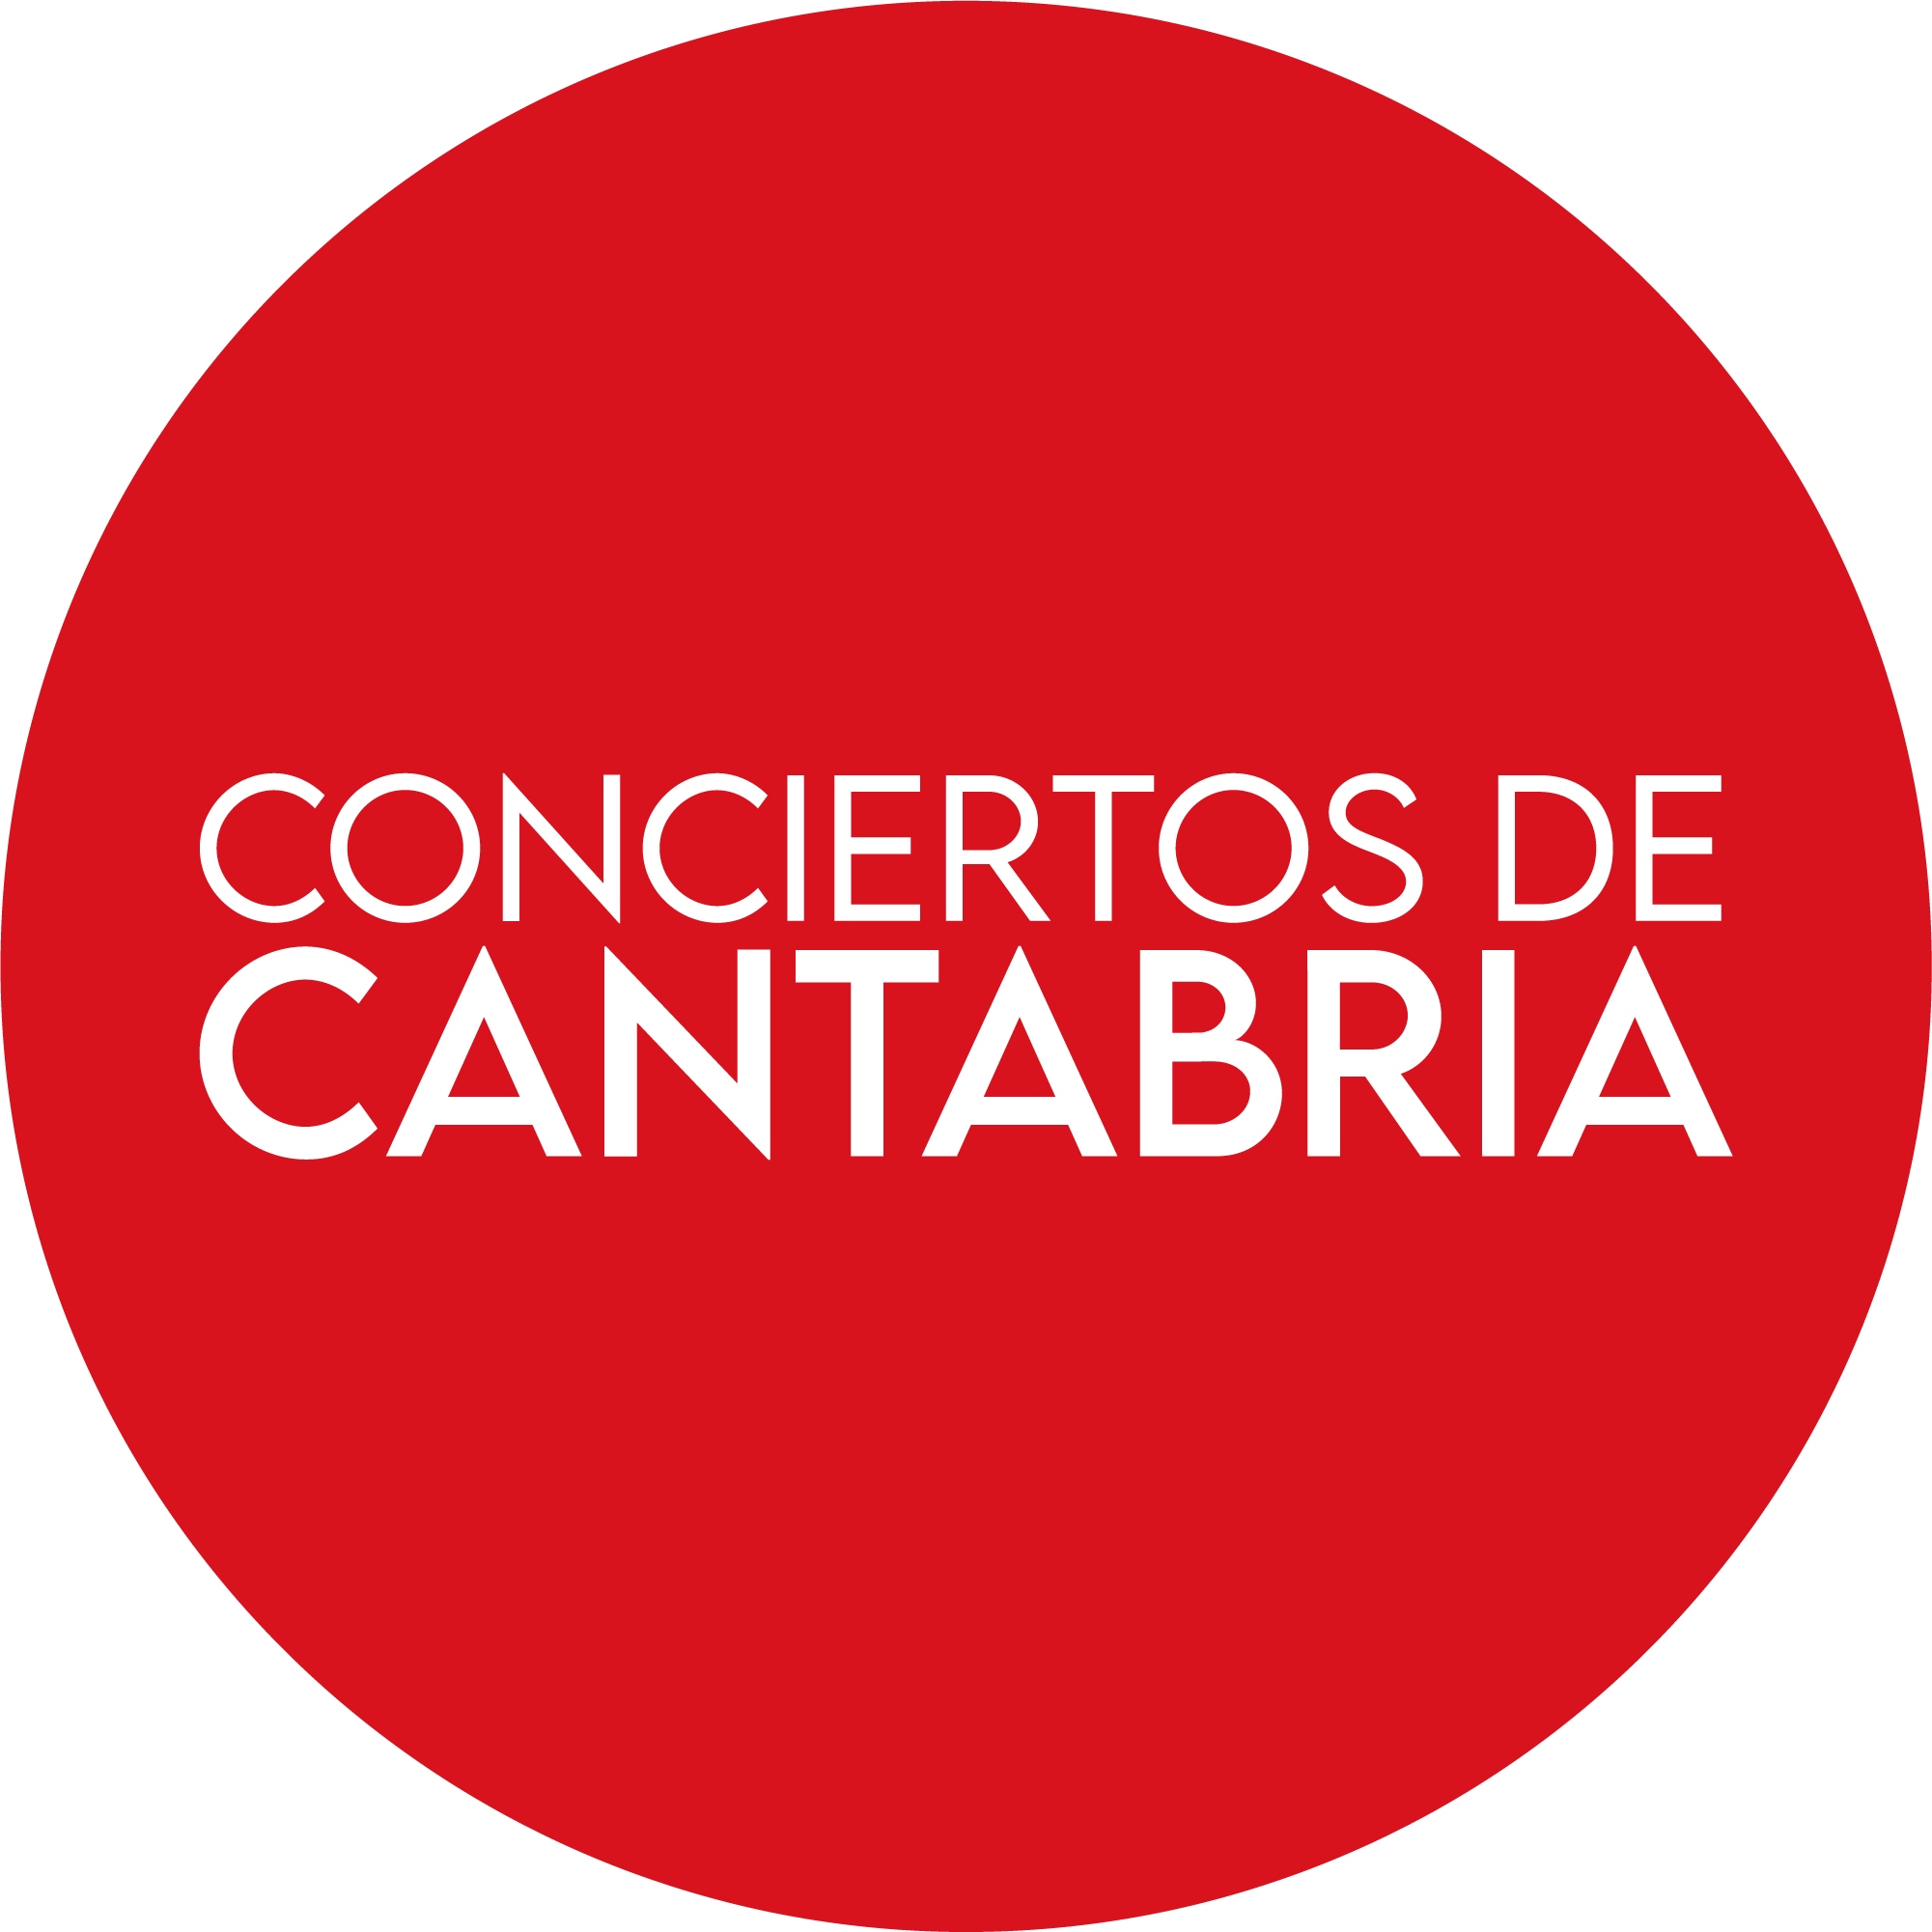 CONCIERTOS DE CANTABRIA